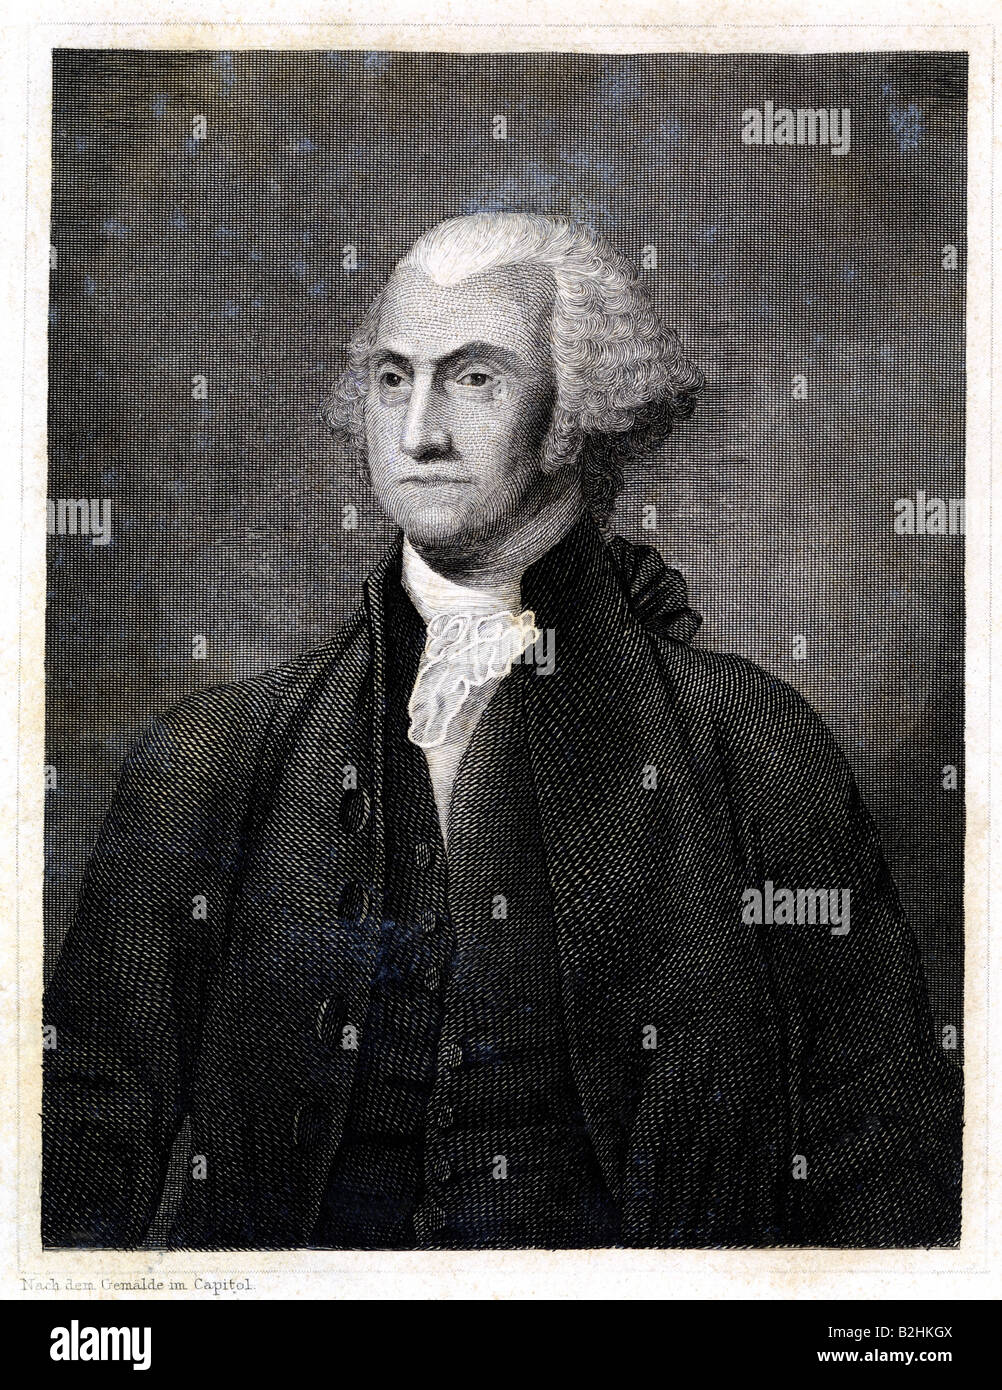 Washington, George, 22.2.1732 - 14.12.1799, American general y político, primer Presidente de los Estados Unidos 1789 - 1797, acero grabado después de pintar en el Capitolio, del siglo xix, , Artist's Copyright no ha de ser borrado Foto de stock